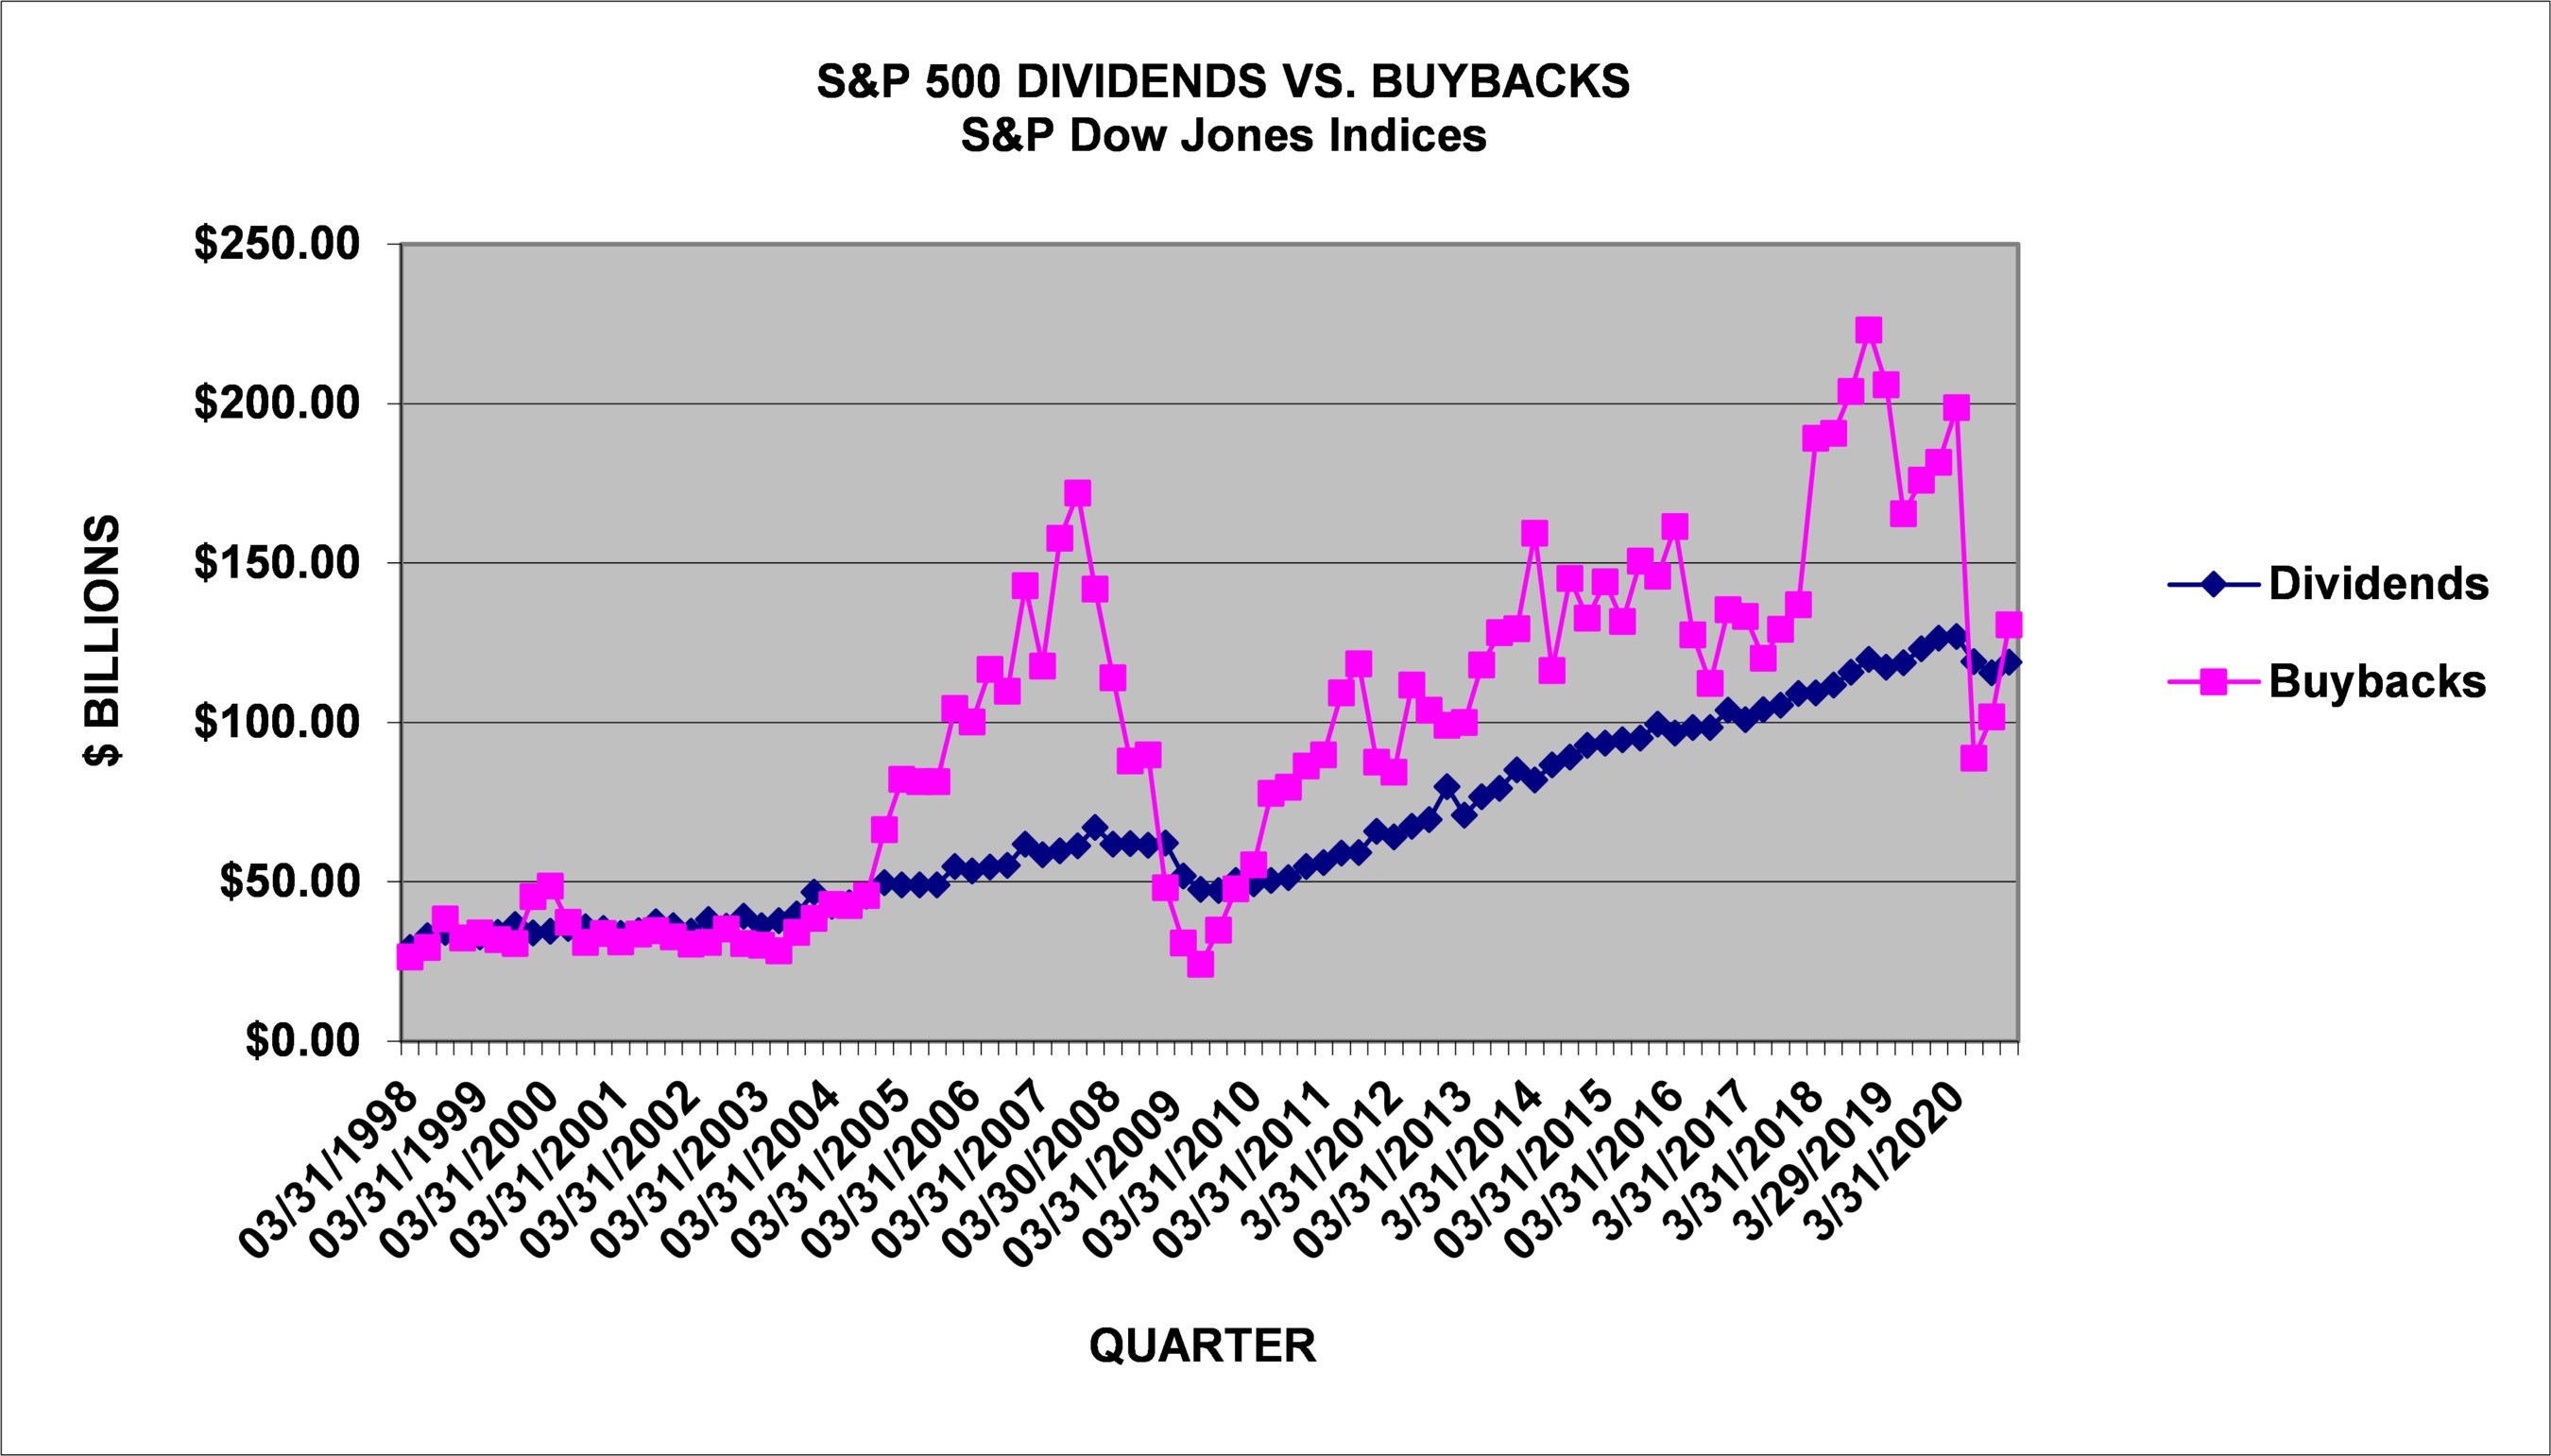 Wartość nominalna skupów akcji i dywidend dla indeksu S&P500 od 1998 roku (kwartalnie)